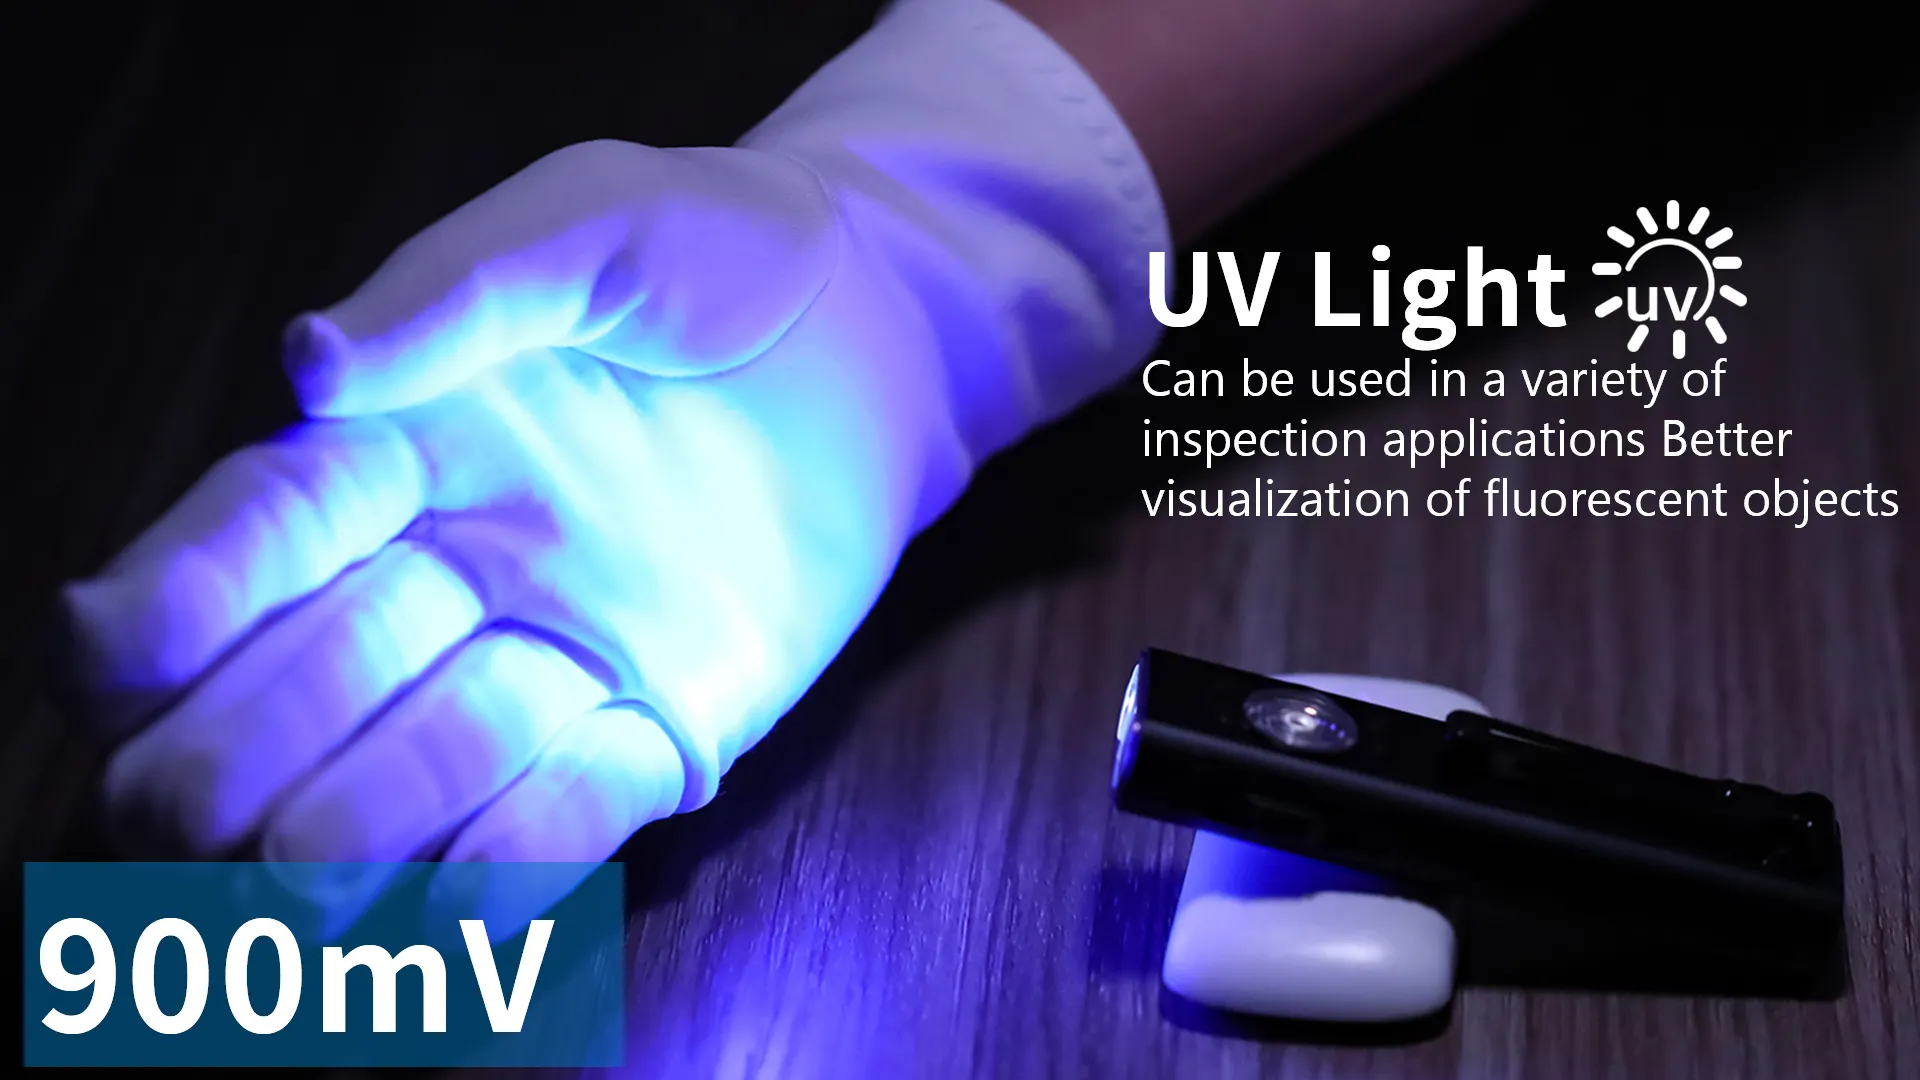 كشاف UV من Trustfire مصباح 395 نانومتر مصغر X3 1050LM كشاف ليزر أخضر مغناطيسي لسلسلة مفاتيح